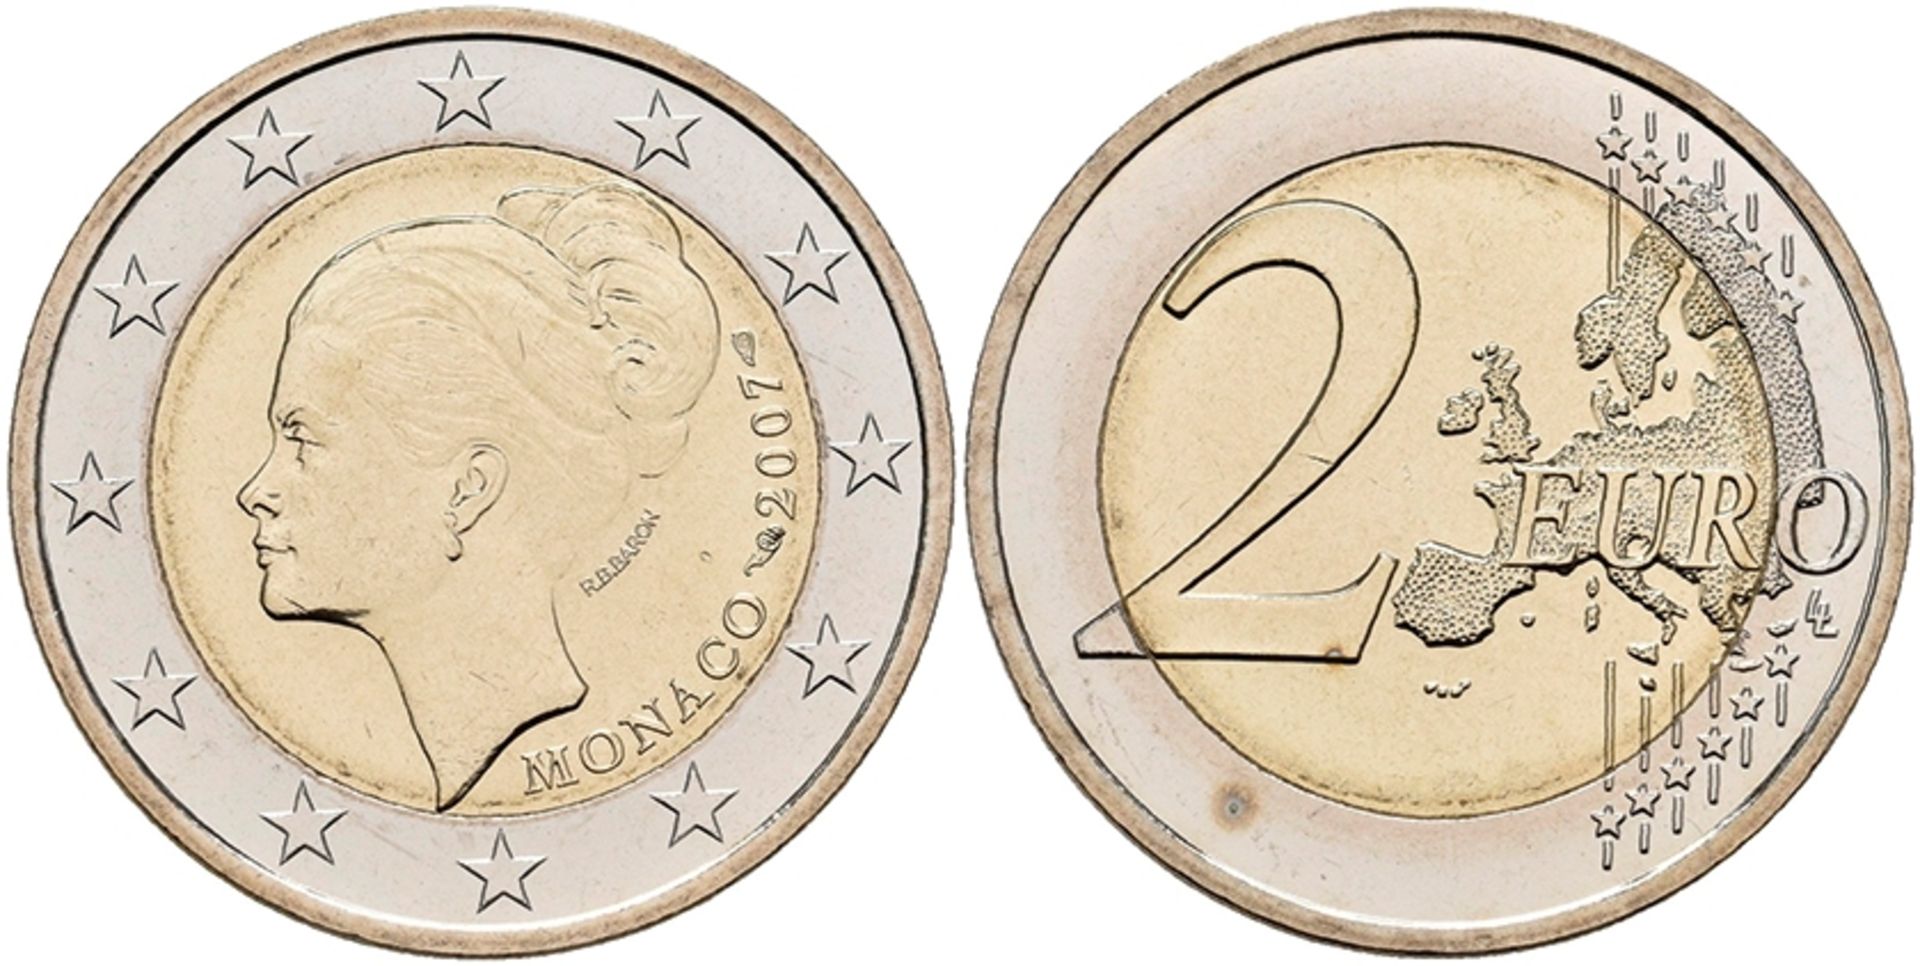 2 Euro, 2007, Grace Patricia Kelly zum 25. Todestag, KM 186, in Ausgabeschatulle, kl. Flecken, vz-st